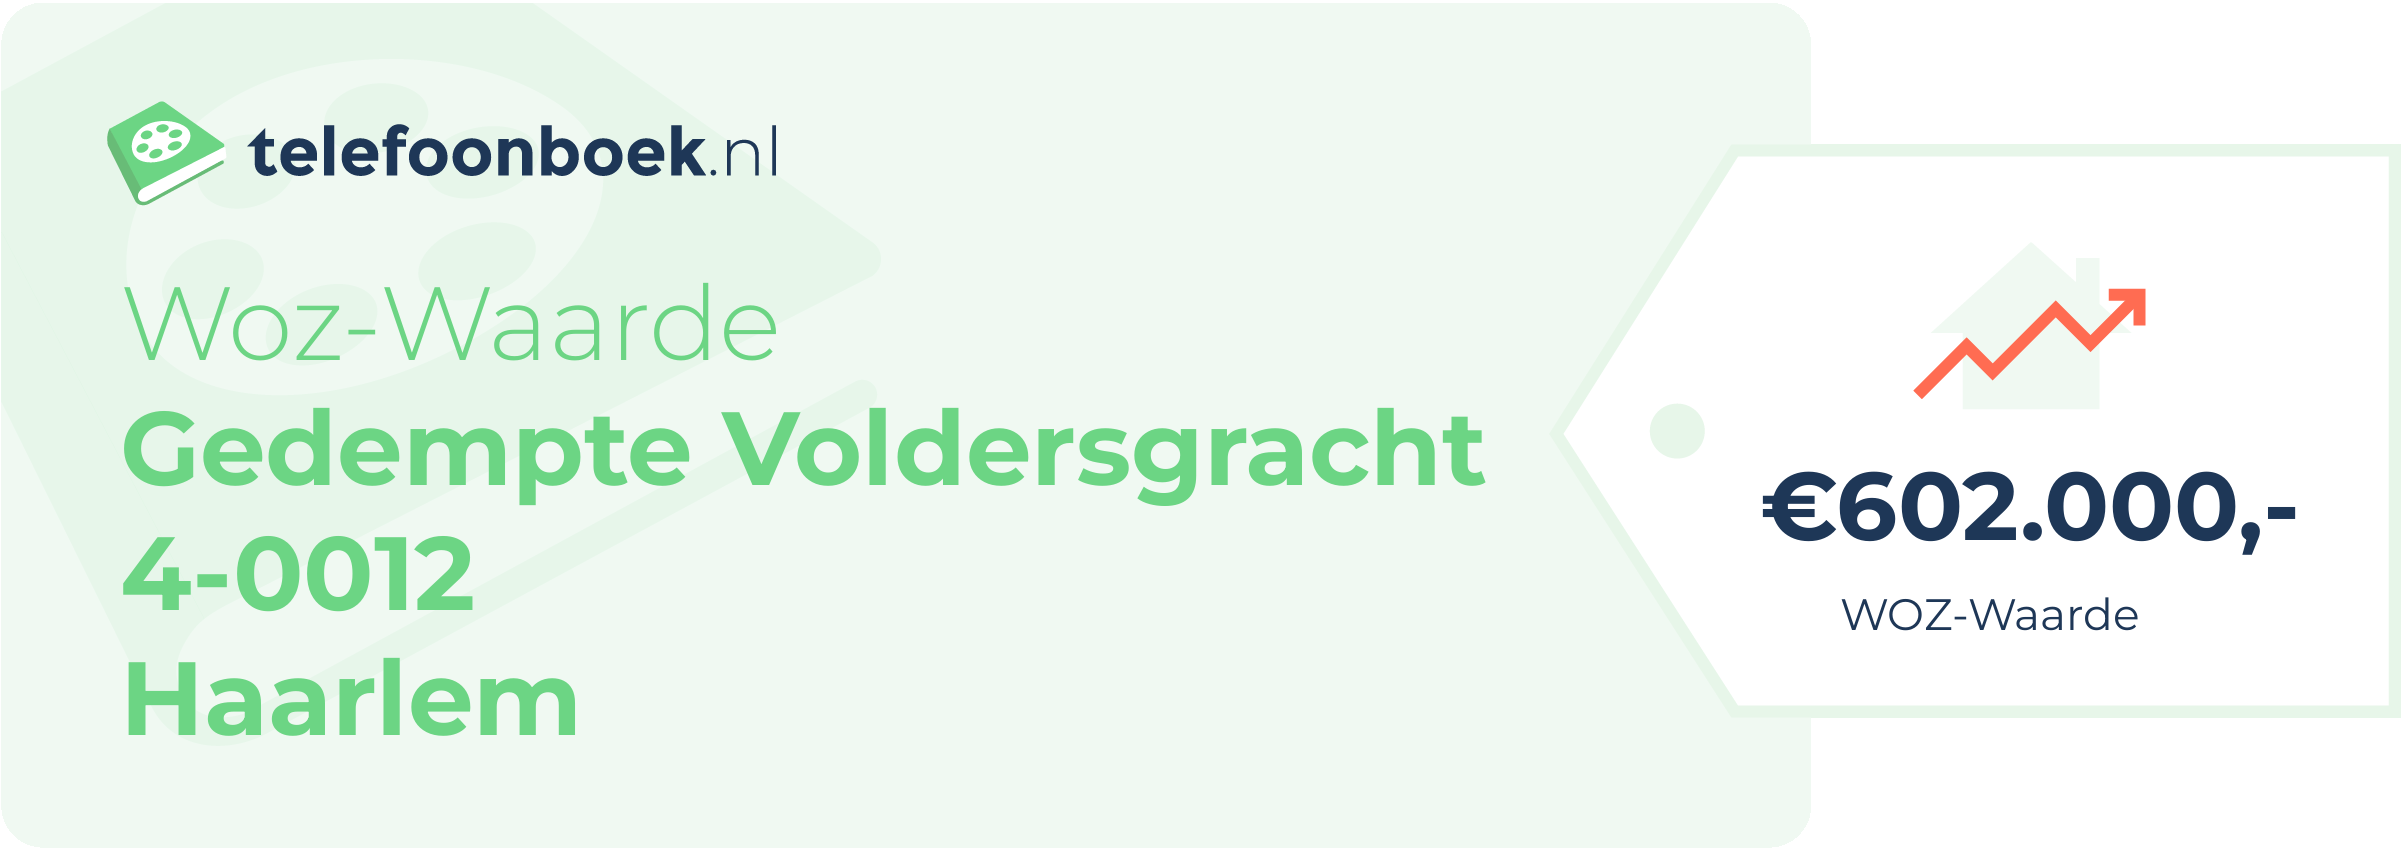 WOZ-waarde Gedempte Voldersgracht 4-0012 Haarlem